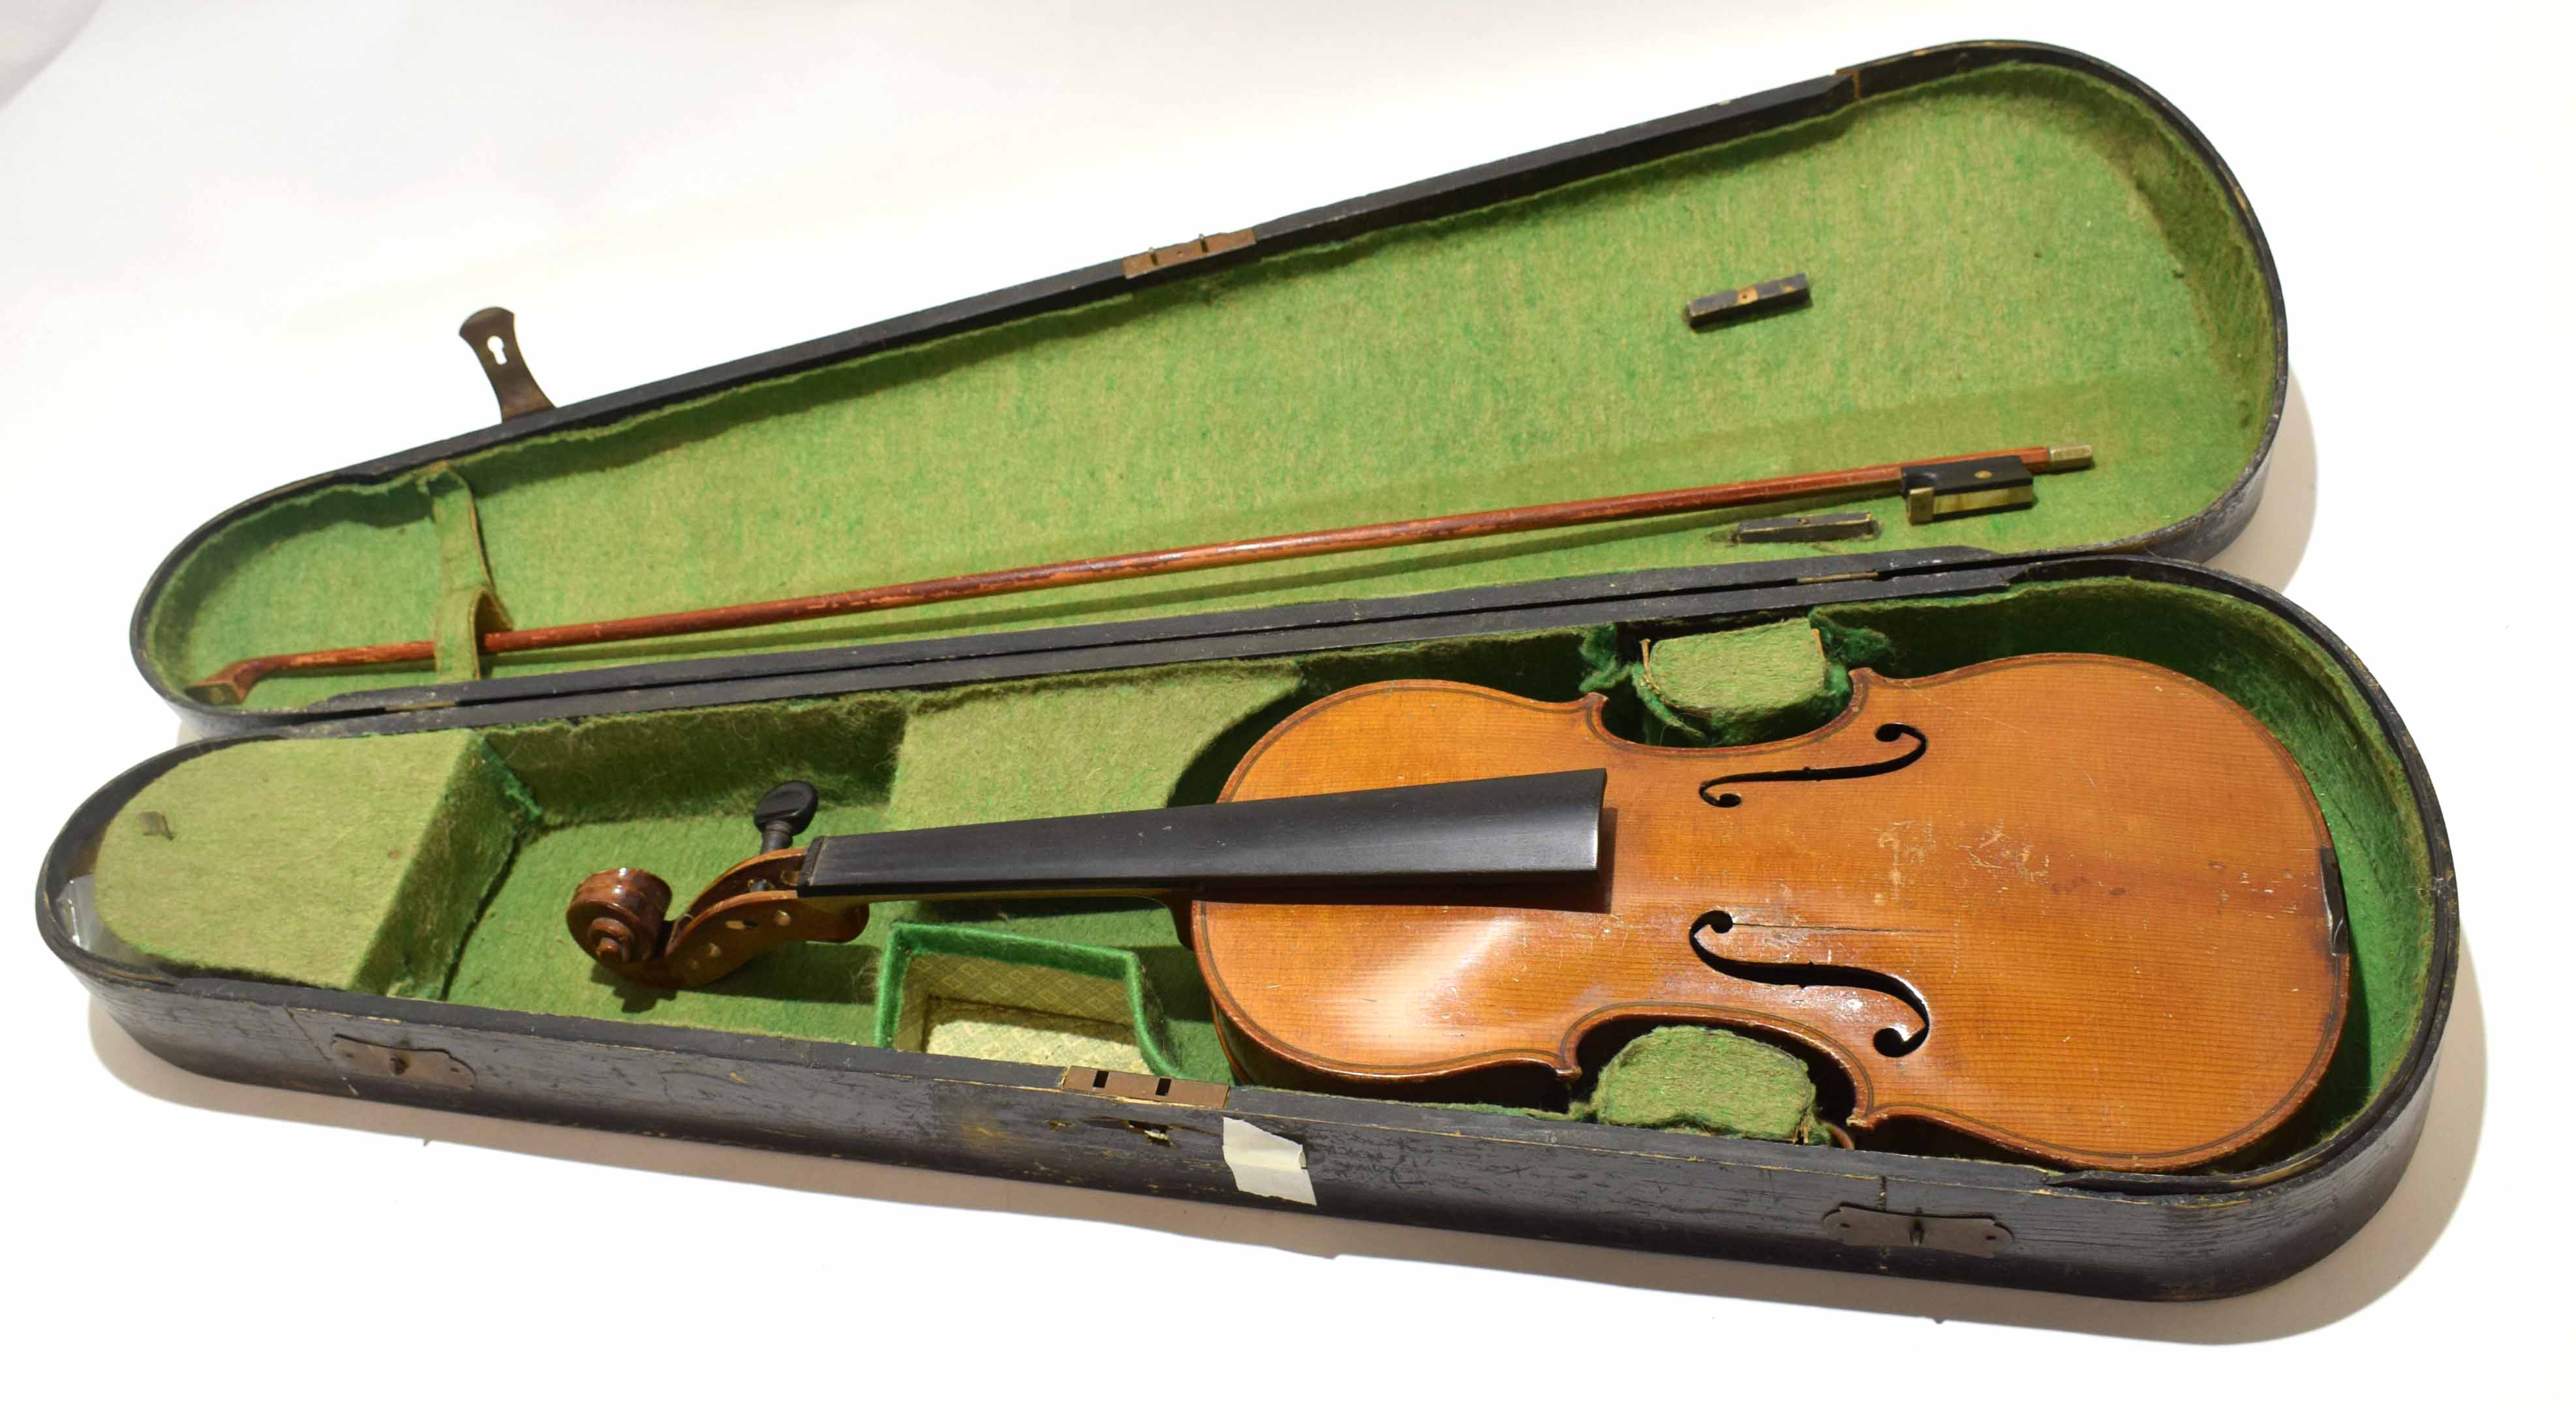 Vintage ebonised wooden cased violin and bow (lacking strings) (af)